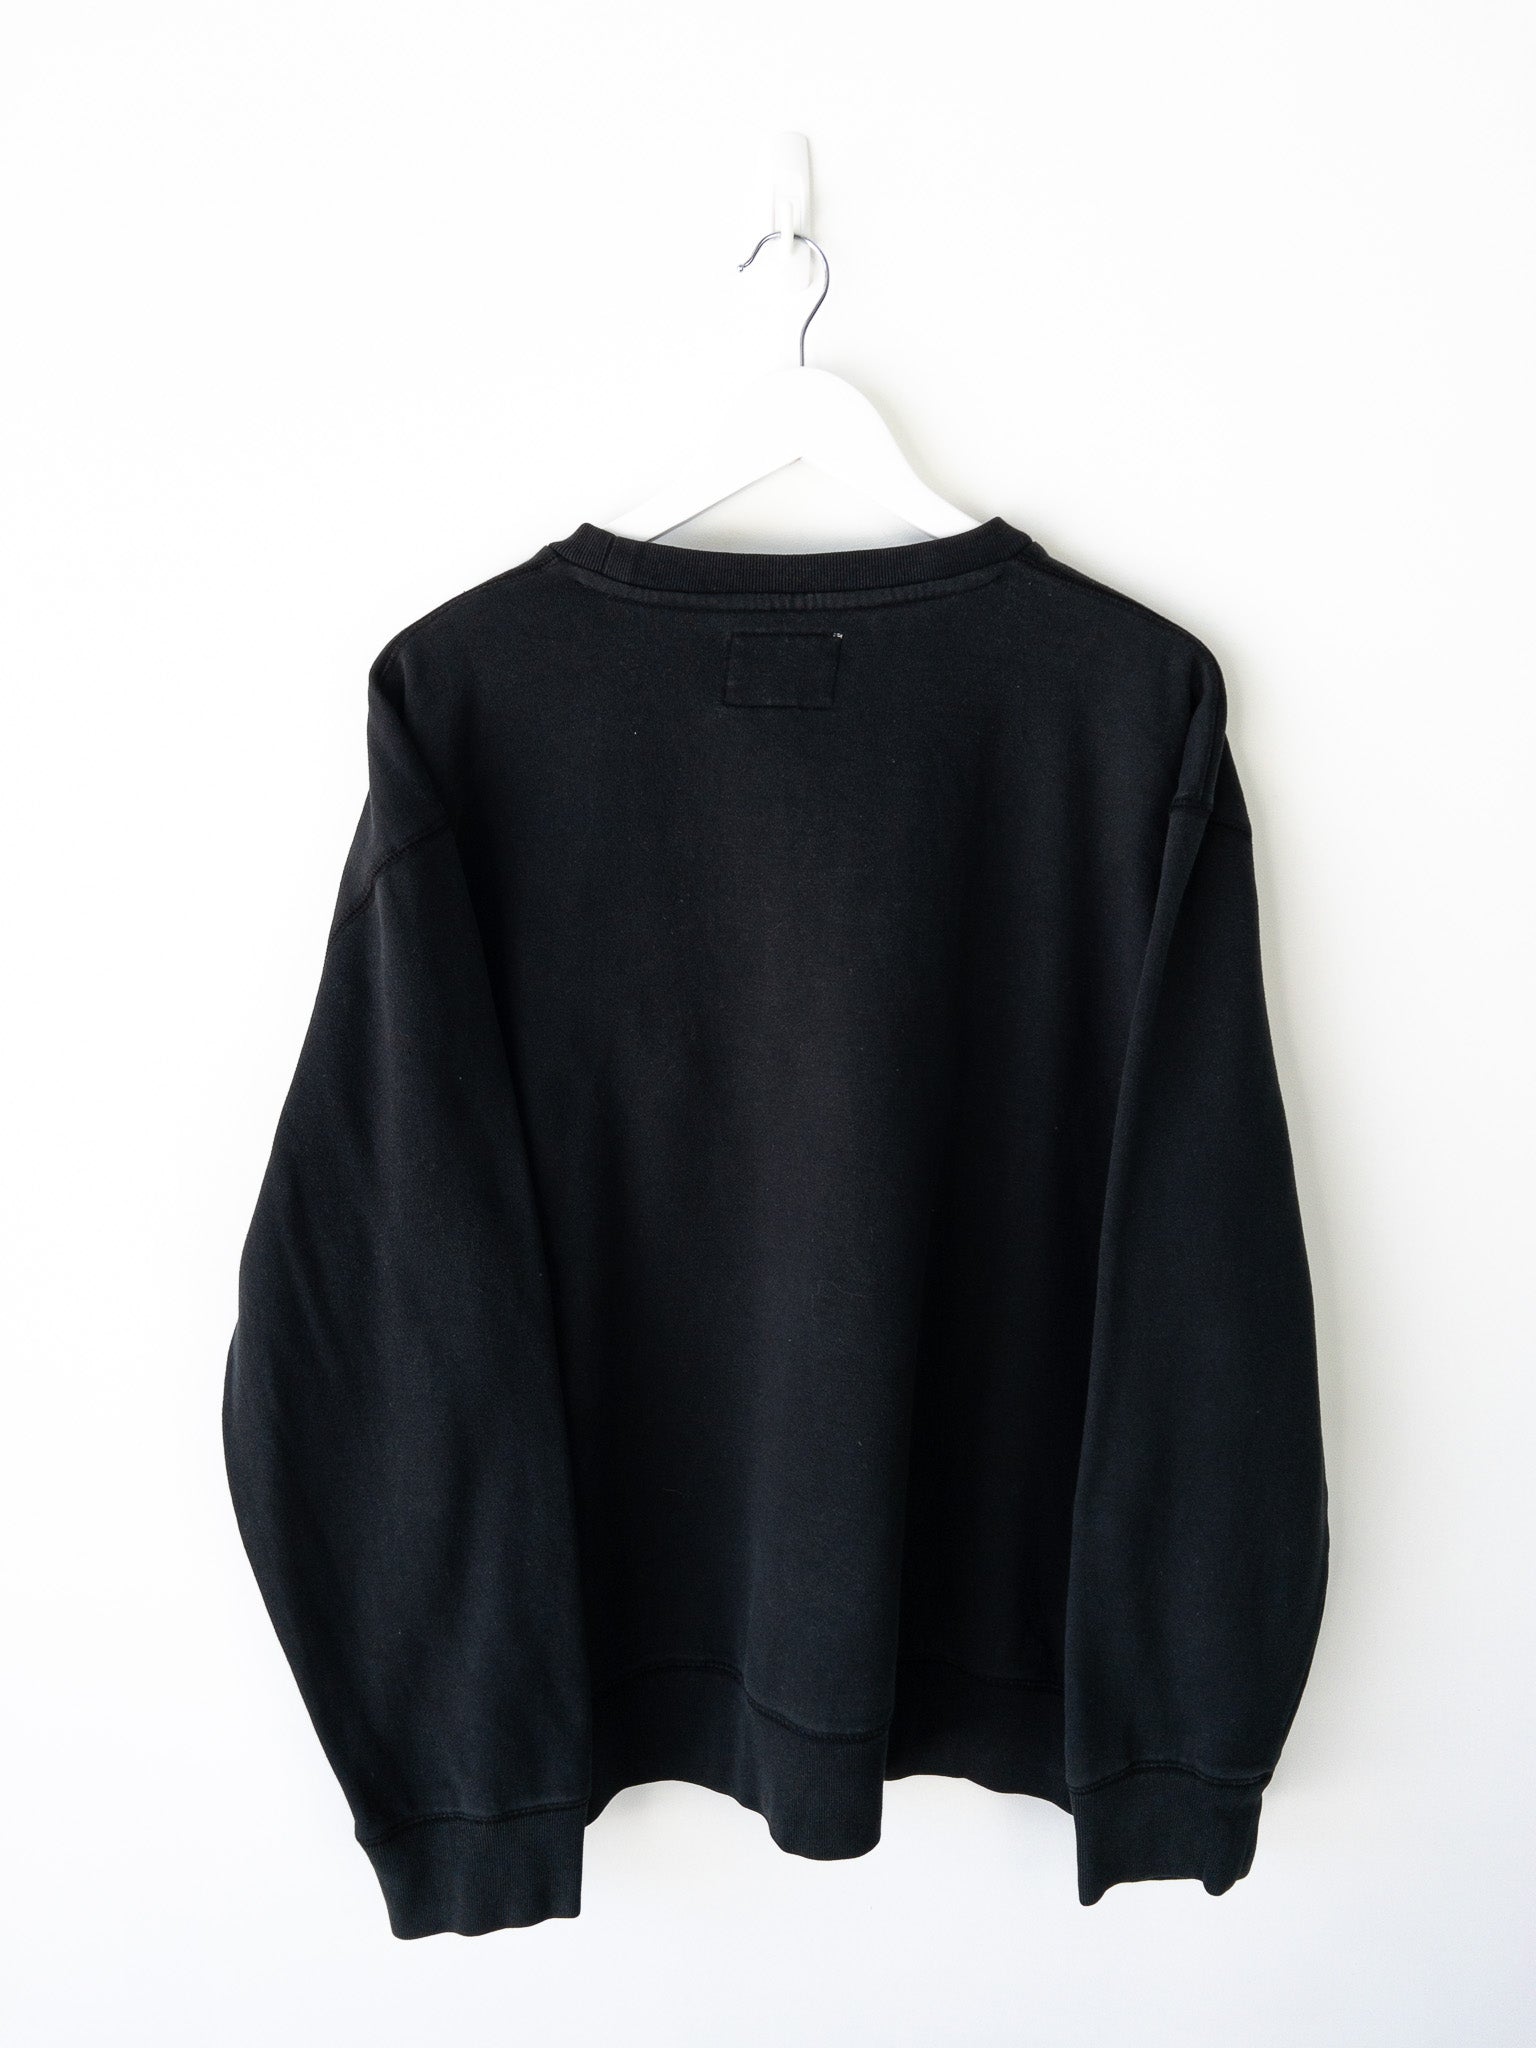 Vintage Eckō Unltd. Sweatshirt (XL)